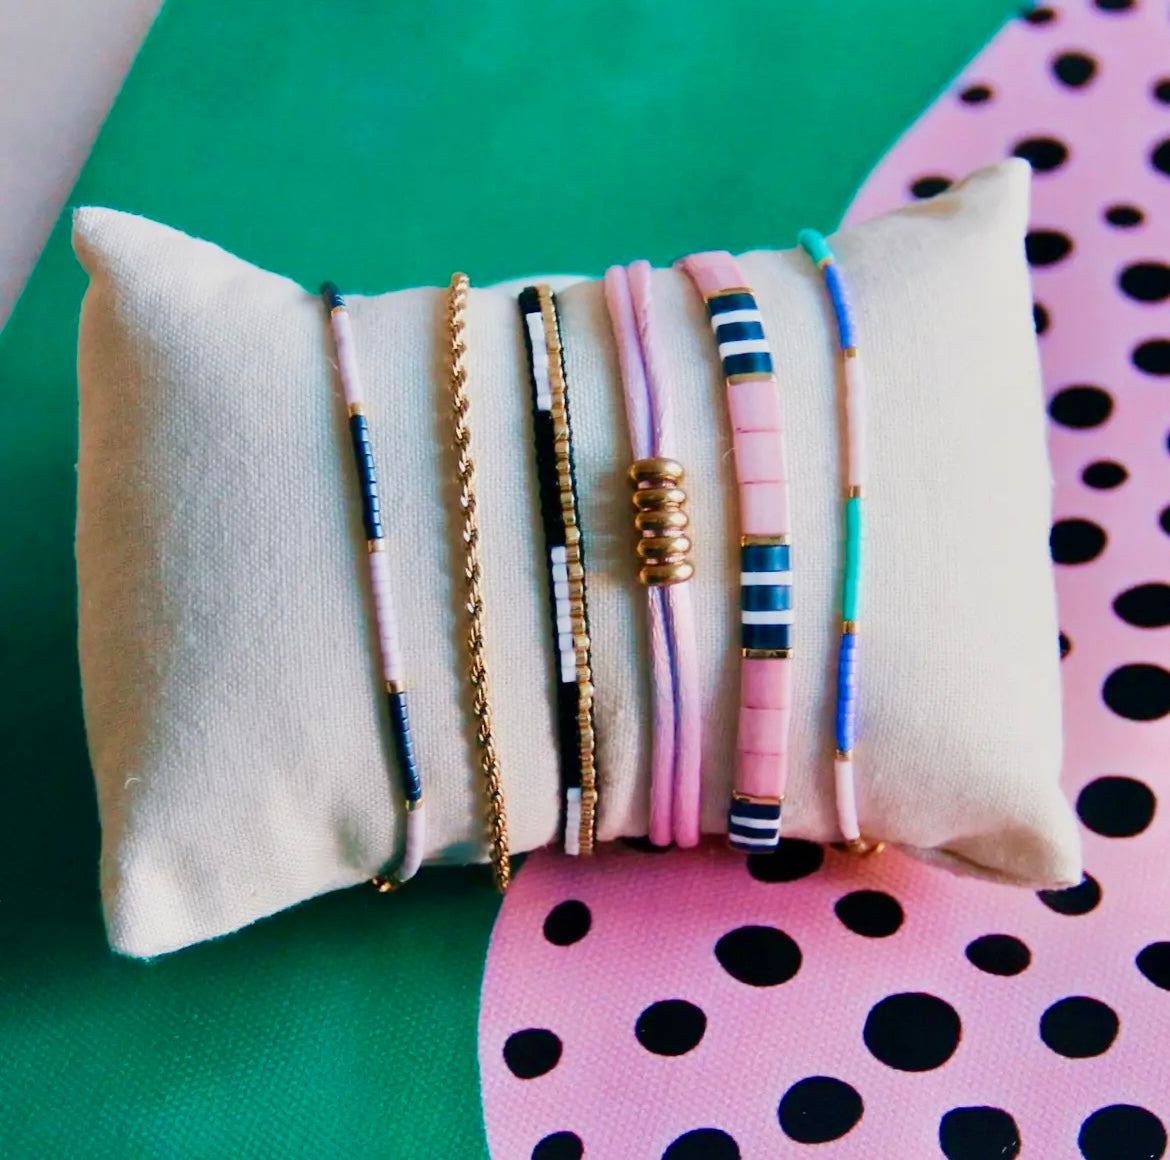 Tilabead-Armband in den knalligen Farben lila, grau und weiß mit vergoldeten Perlen. Mit Schiebeknöpfe individuell in der Größe verstellbar. 